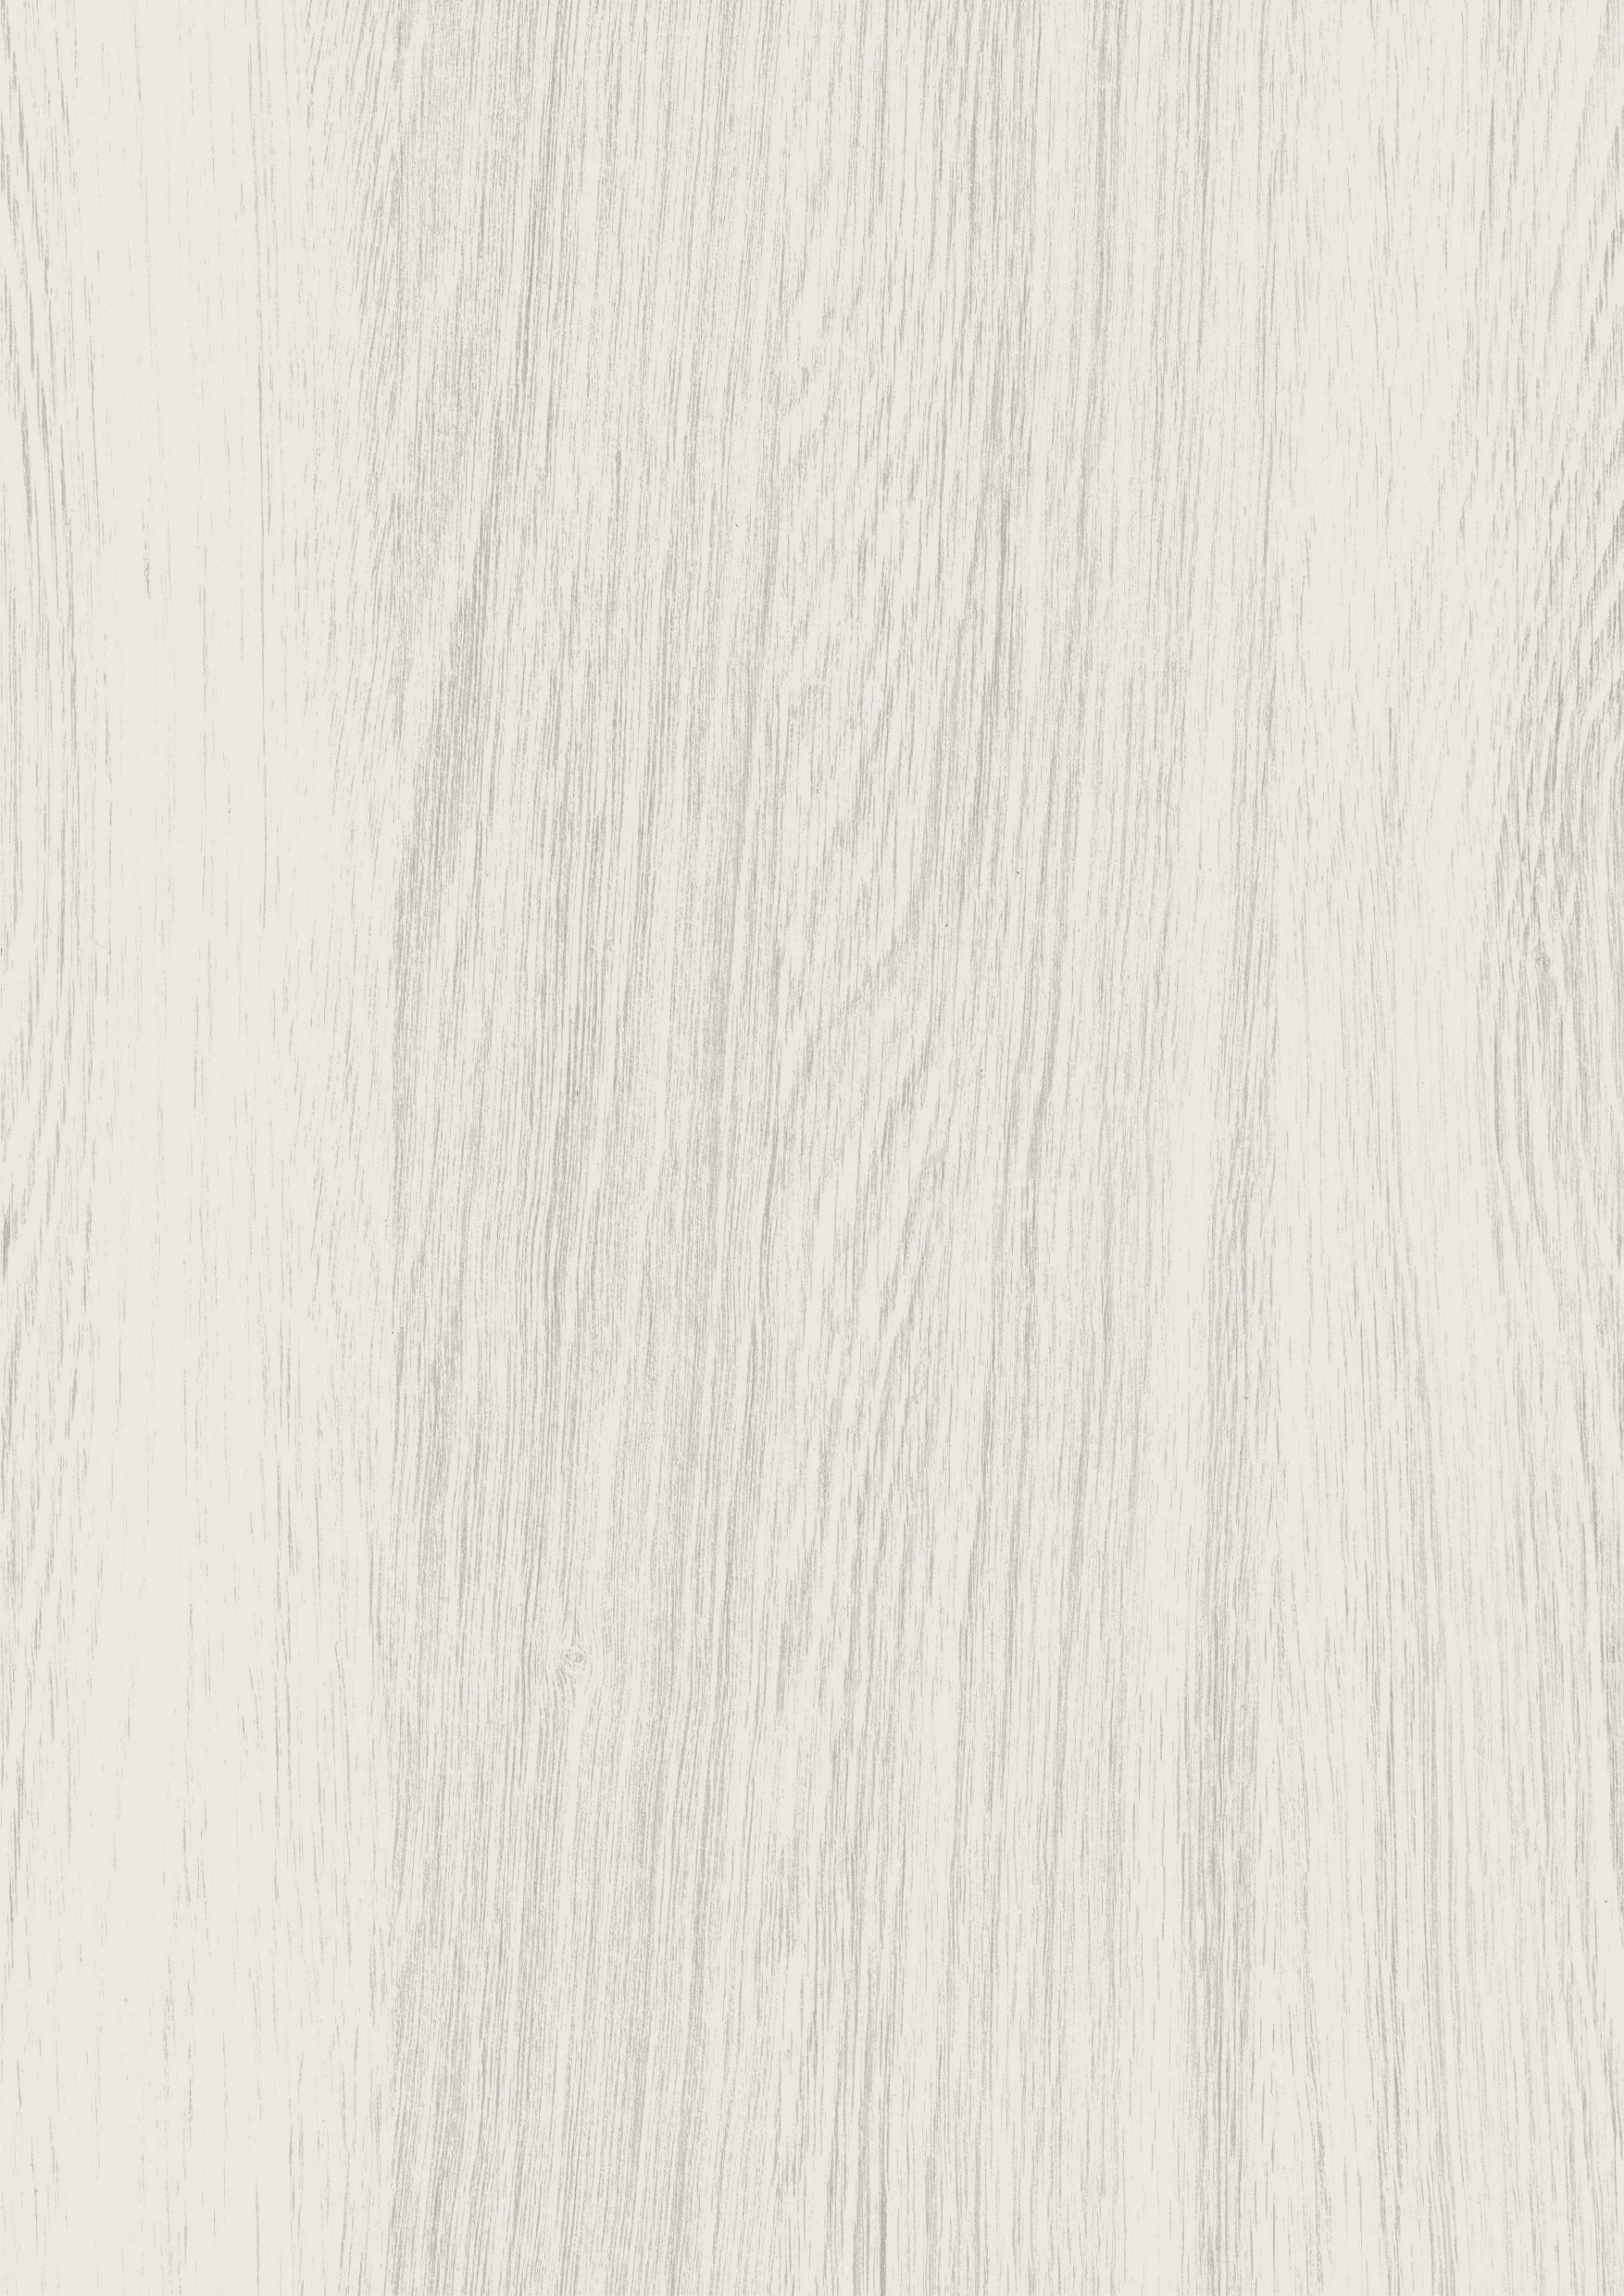 澄木嚴選─UA超耐磨木地板 Enstyle系列 4v導角 「 科隆白橡」 嘉義澄木超耐磨木地板 - 澄木地板─超耐磨木地板專業施工